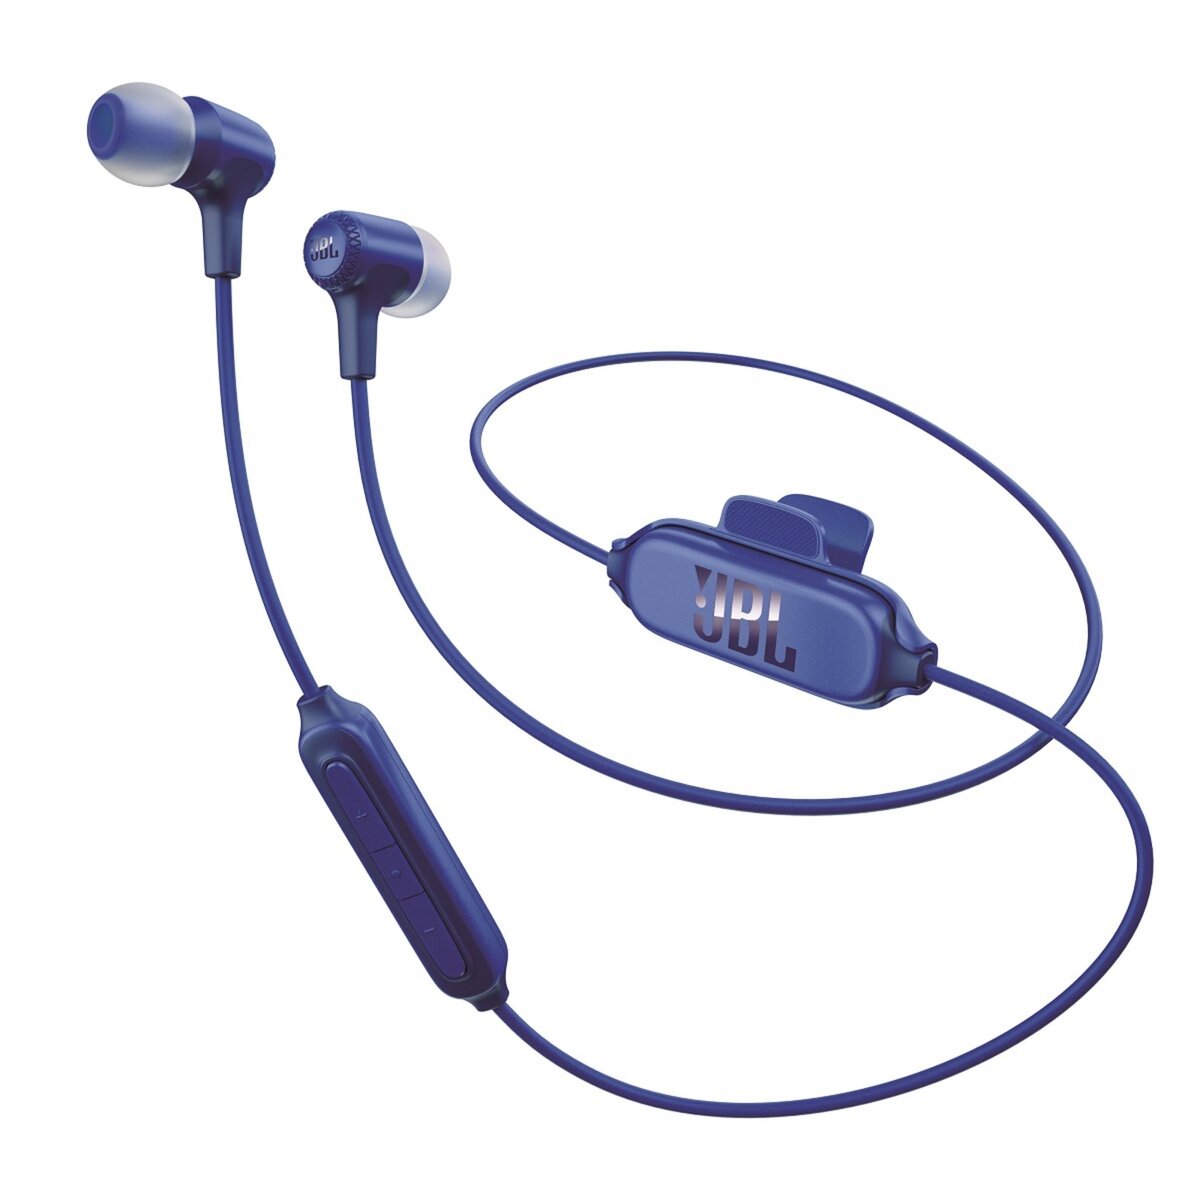 JBL Ecouteurs intra-auriculaires sans fil - Bleu - E25BT